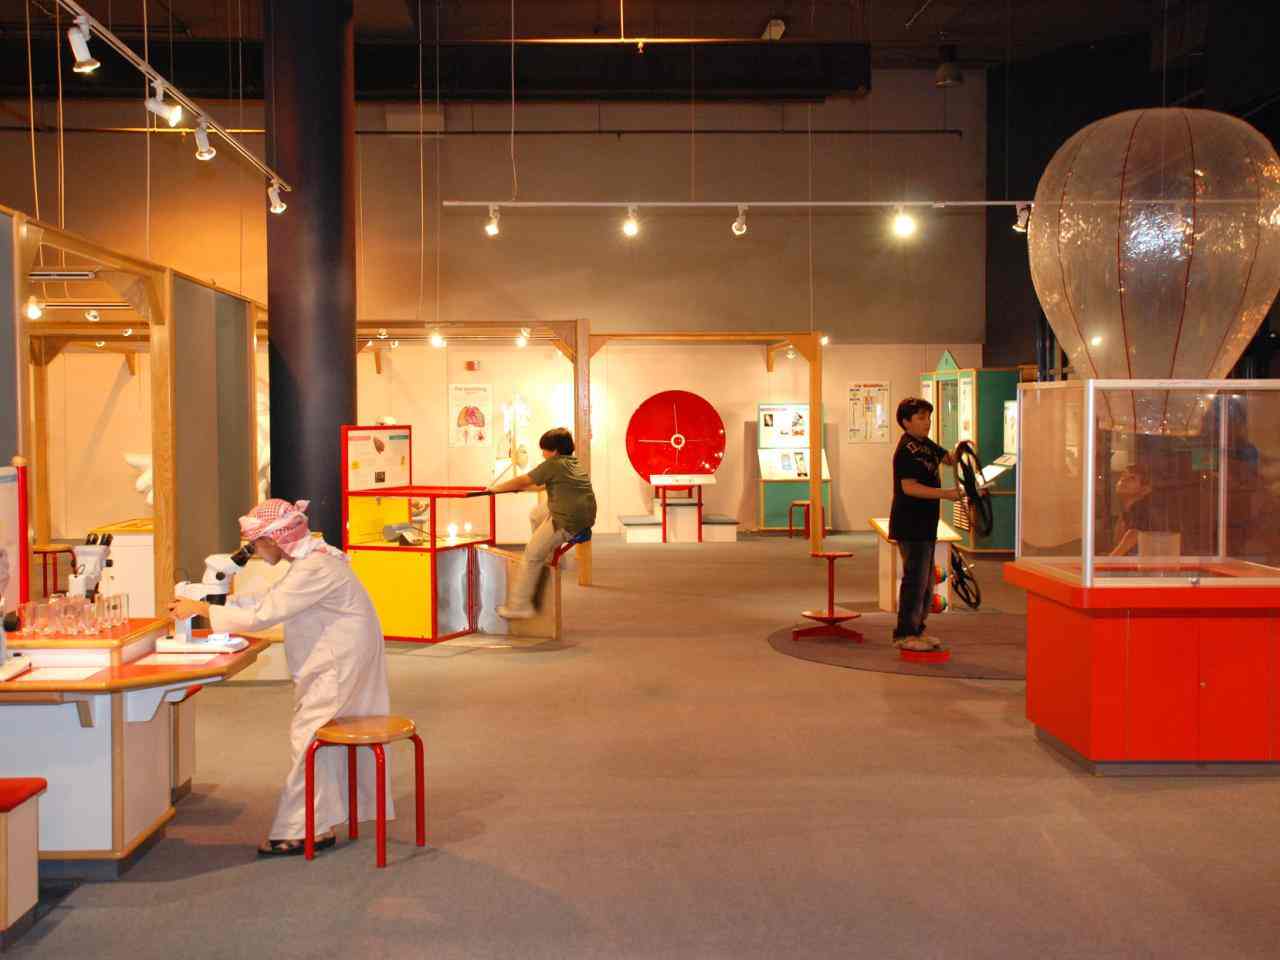 يعد متحف الشارقة العلمي من اهم الاماكن السياحية في الشارقة الامارات